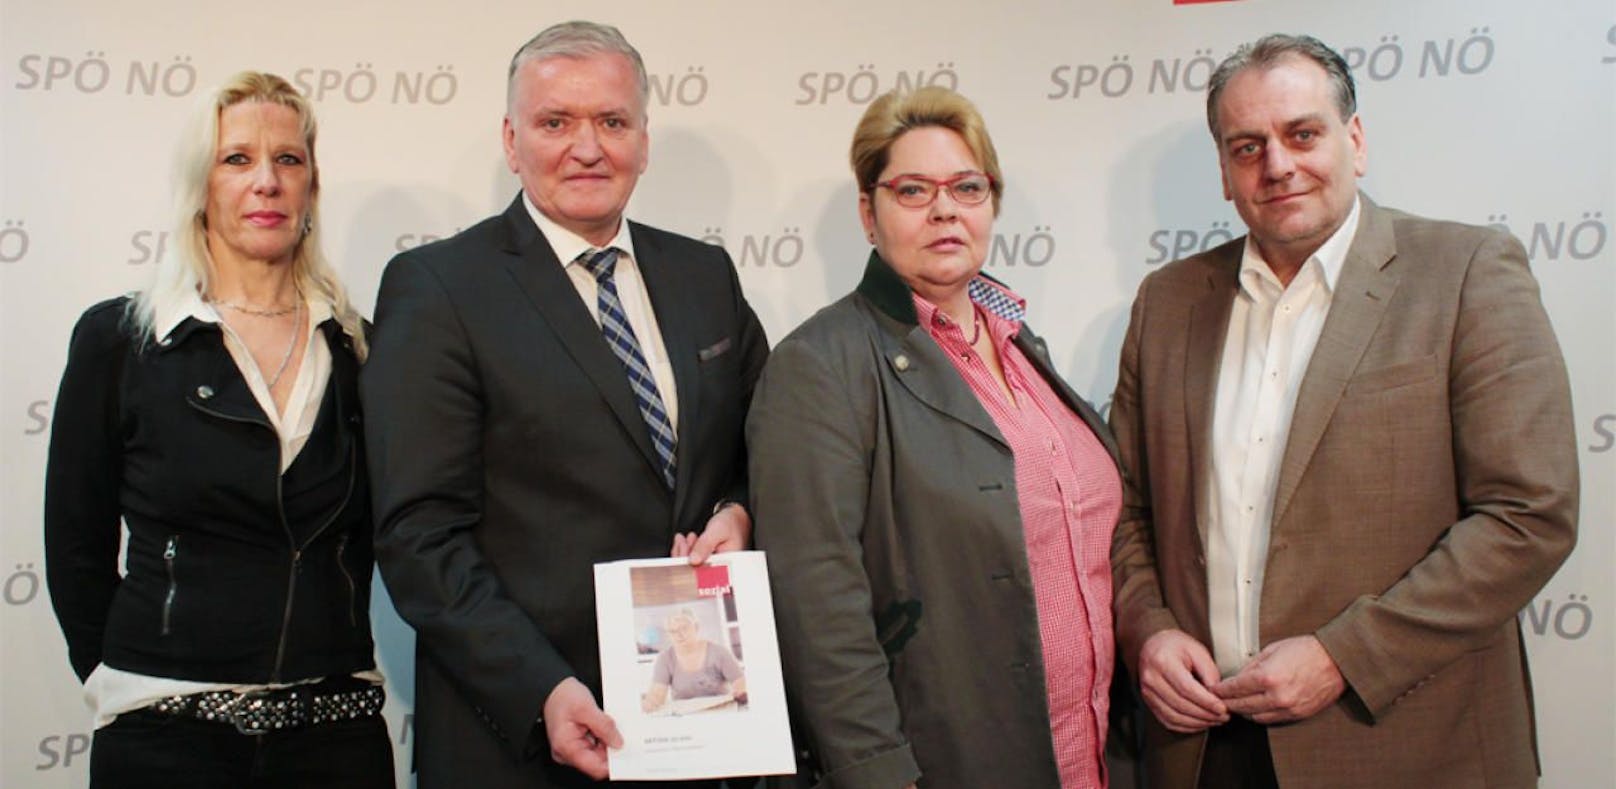 Aus für Aktion 20.000 verärgert die SPÖ: Sigrid Schmidt (Schwechat), Landesparteivorsitzender Landesrat Franz Schnabl, Bgm. Karin Baier (Schwechat) und NR  Andreas Kollross (Trumau).